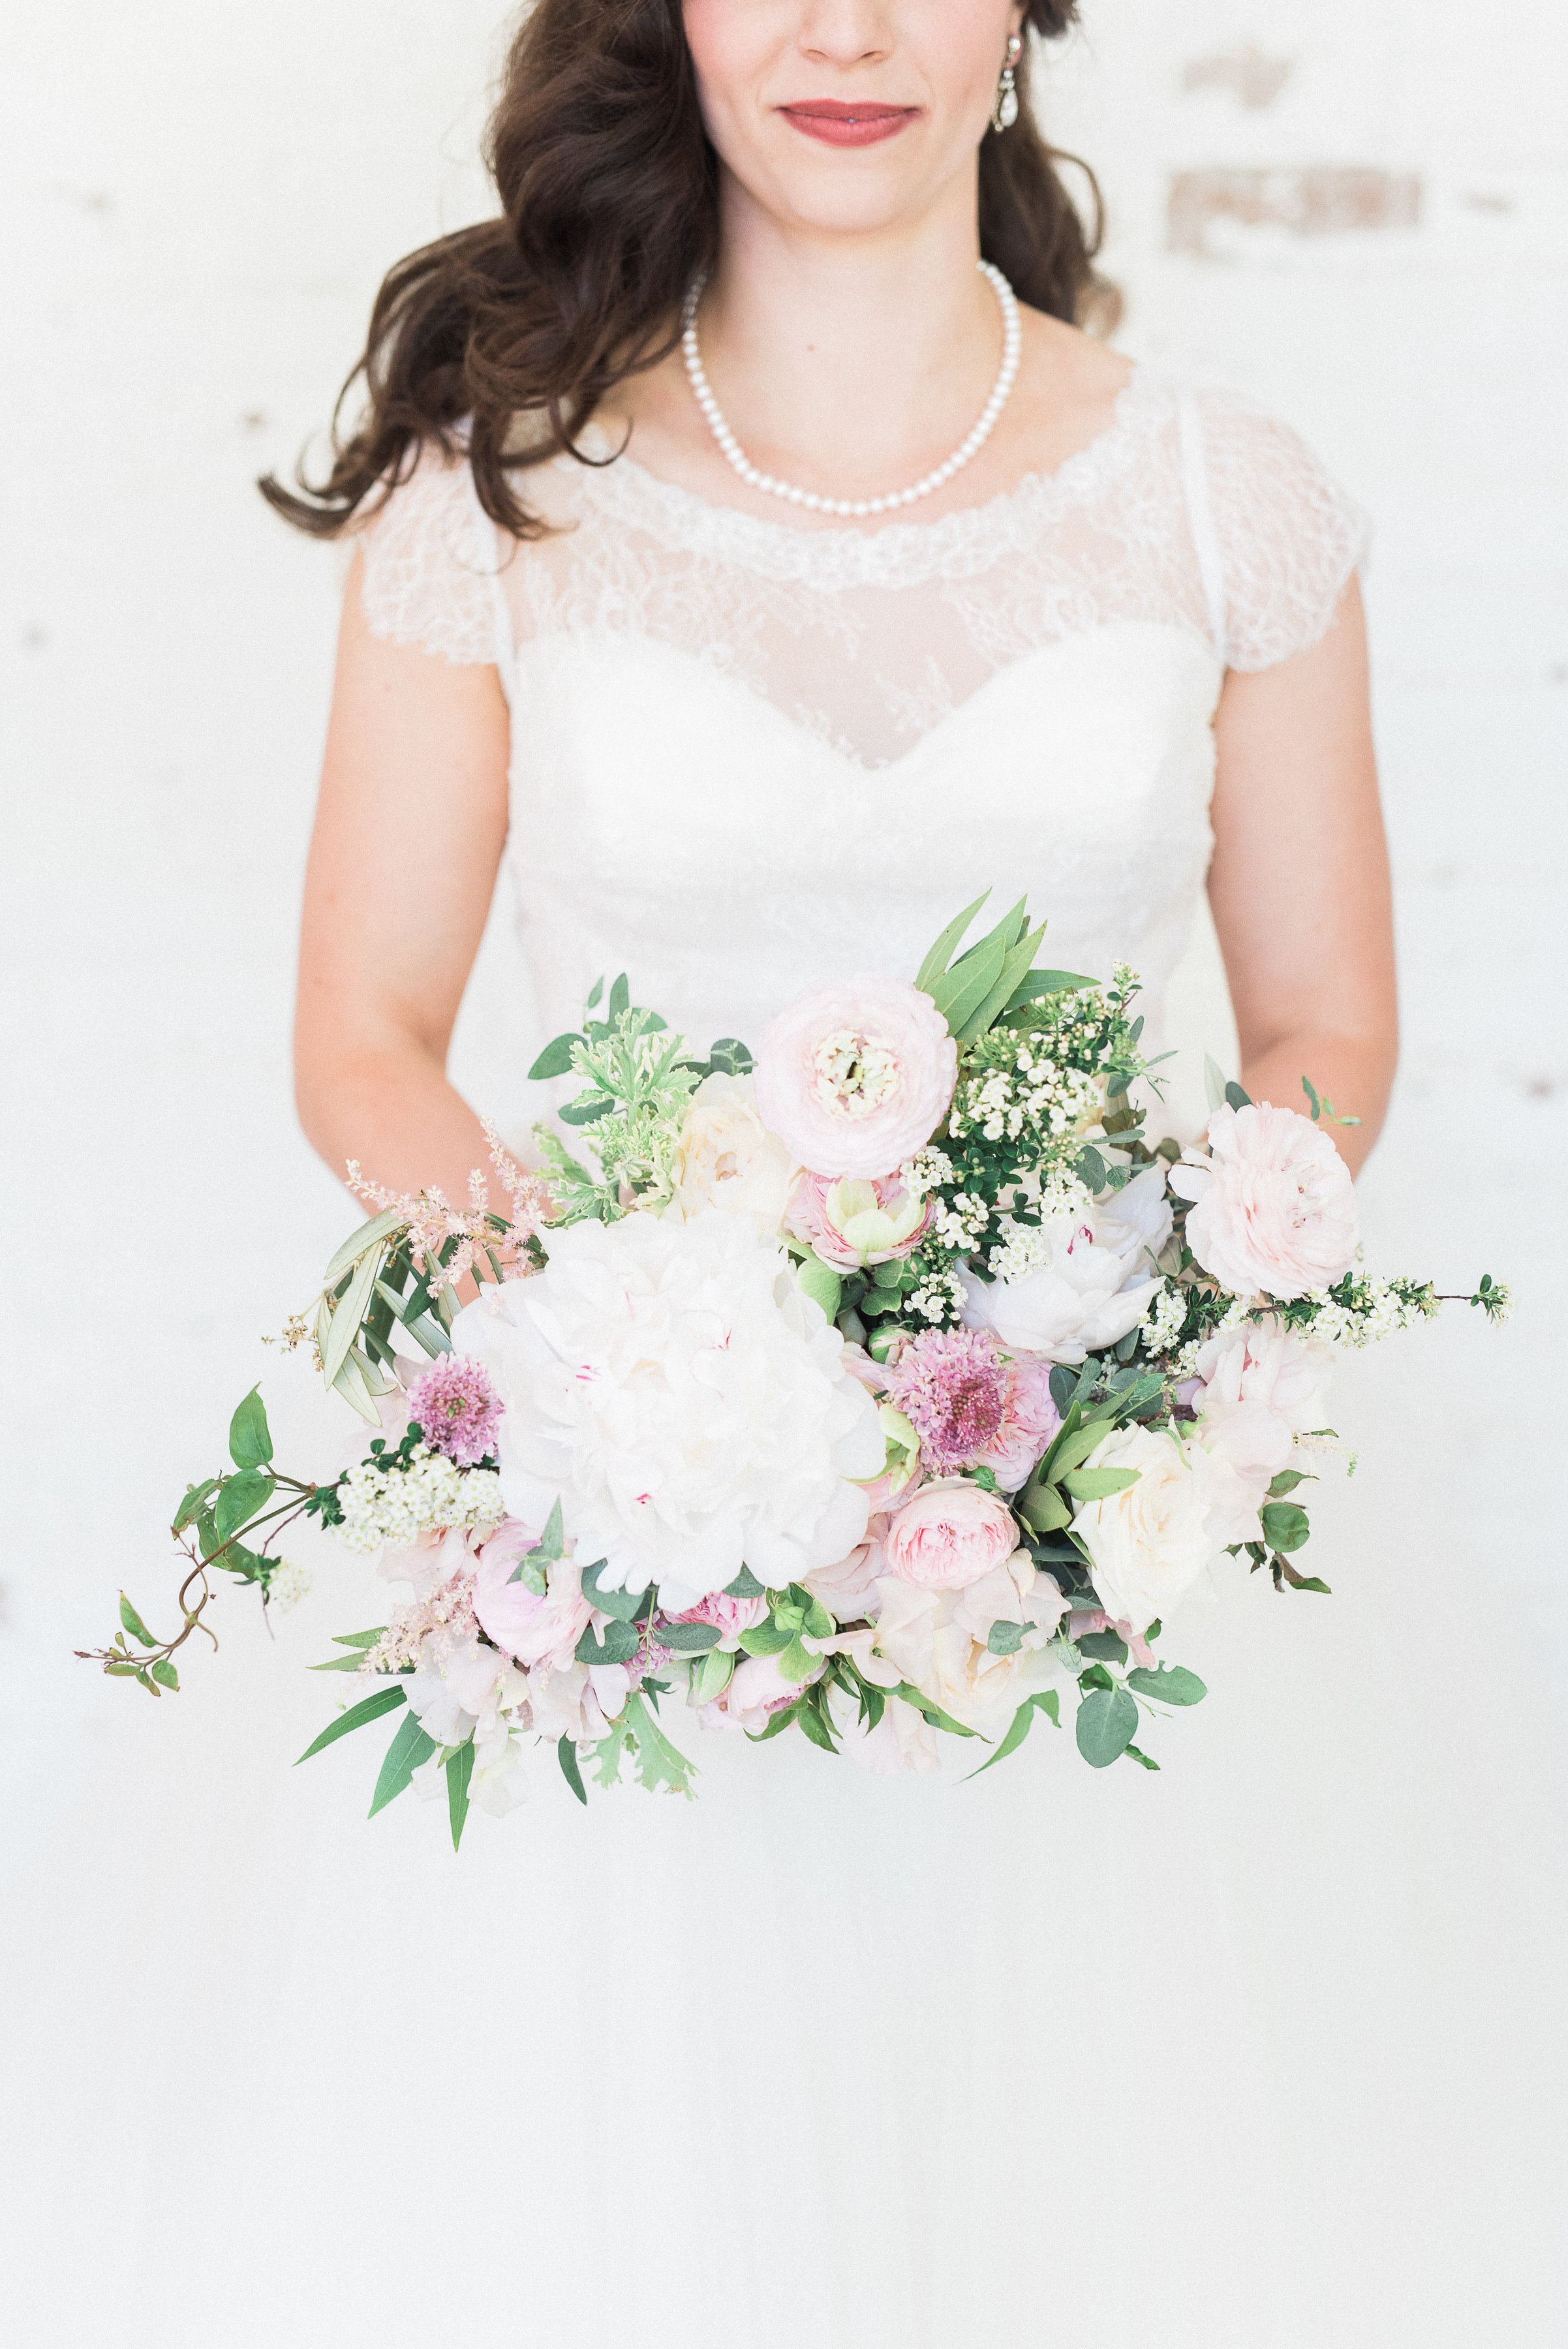 Blush and white natural floral design // Nashville Spring Wedding Florist